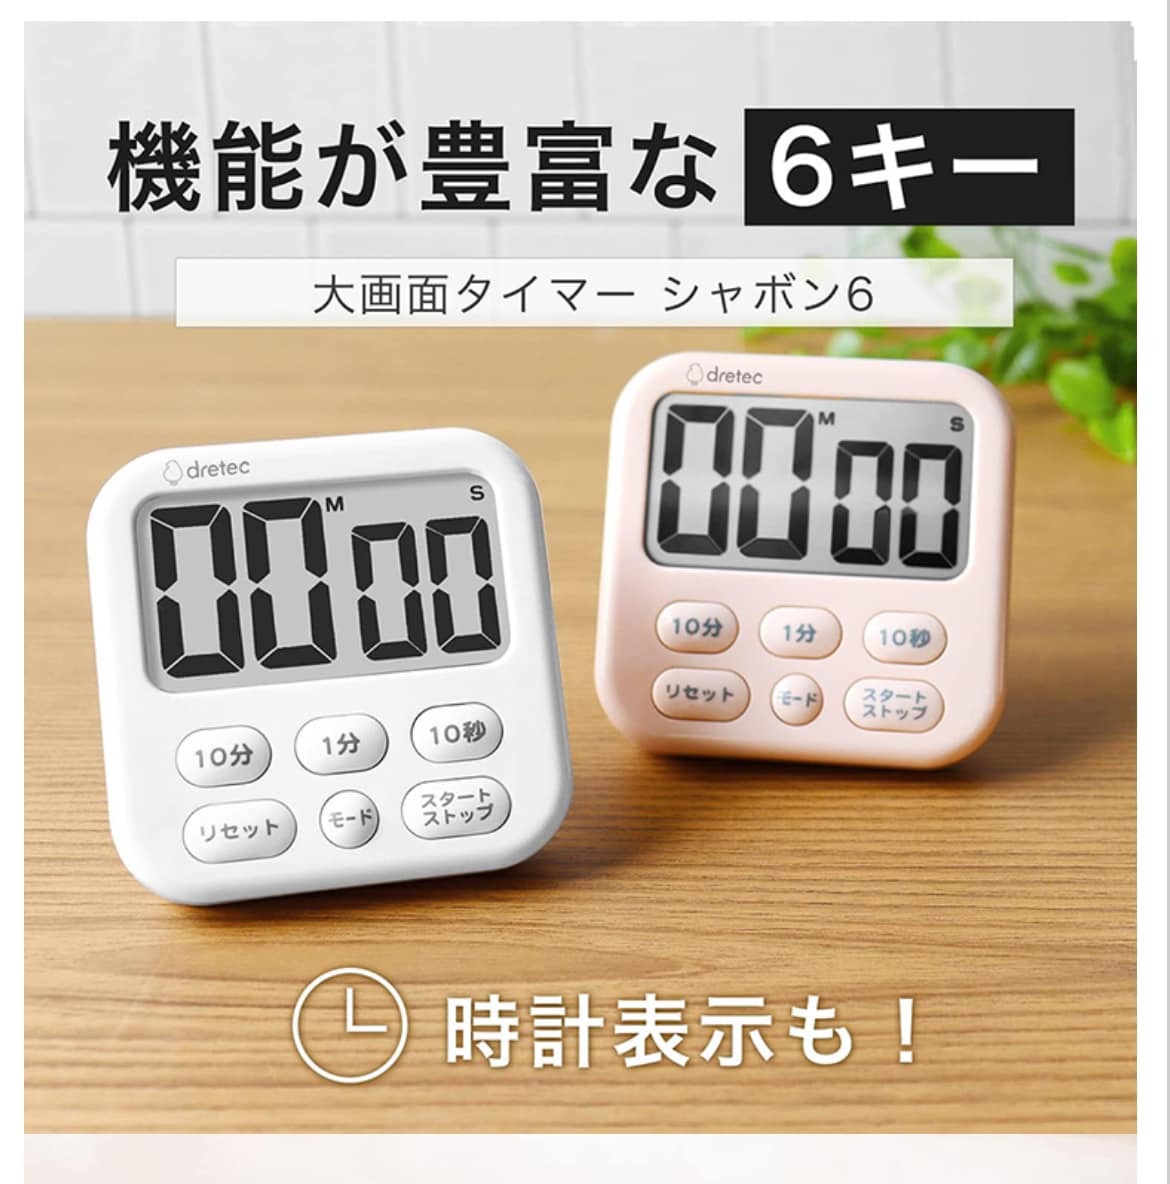 日本餐具 DRETEC大螢幕時鐘烹飪料理計時器 王球餐具 (7)